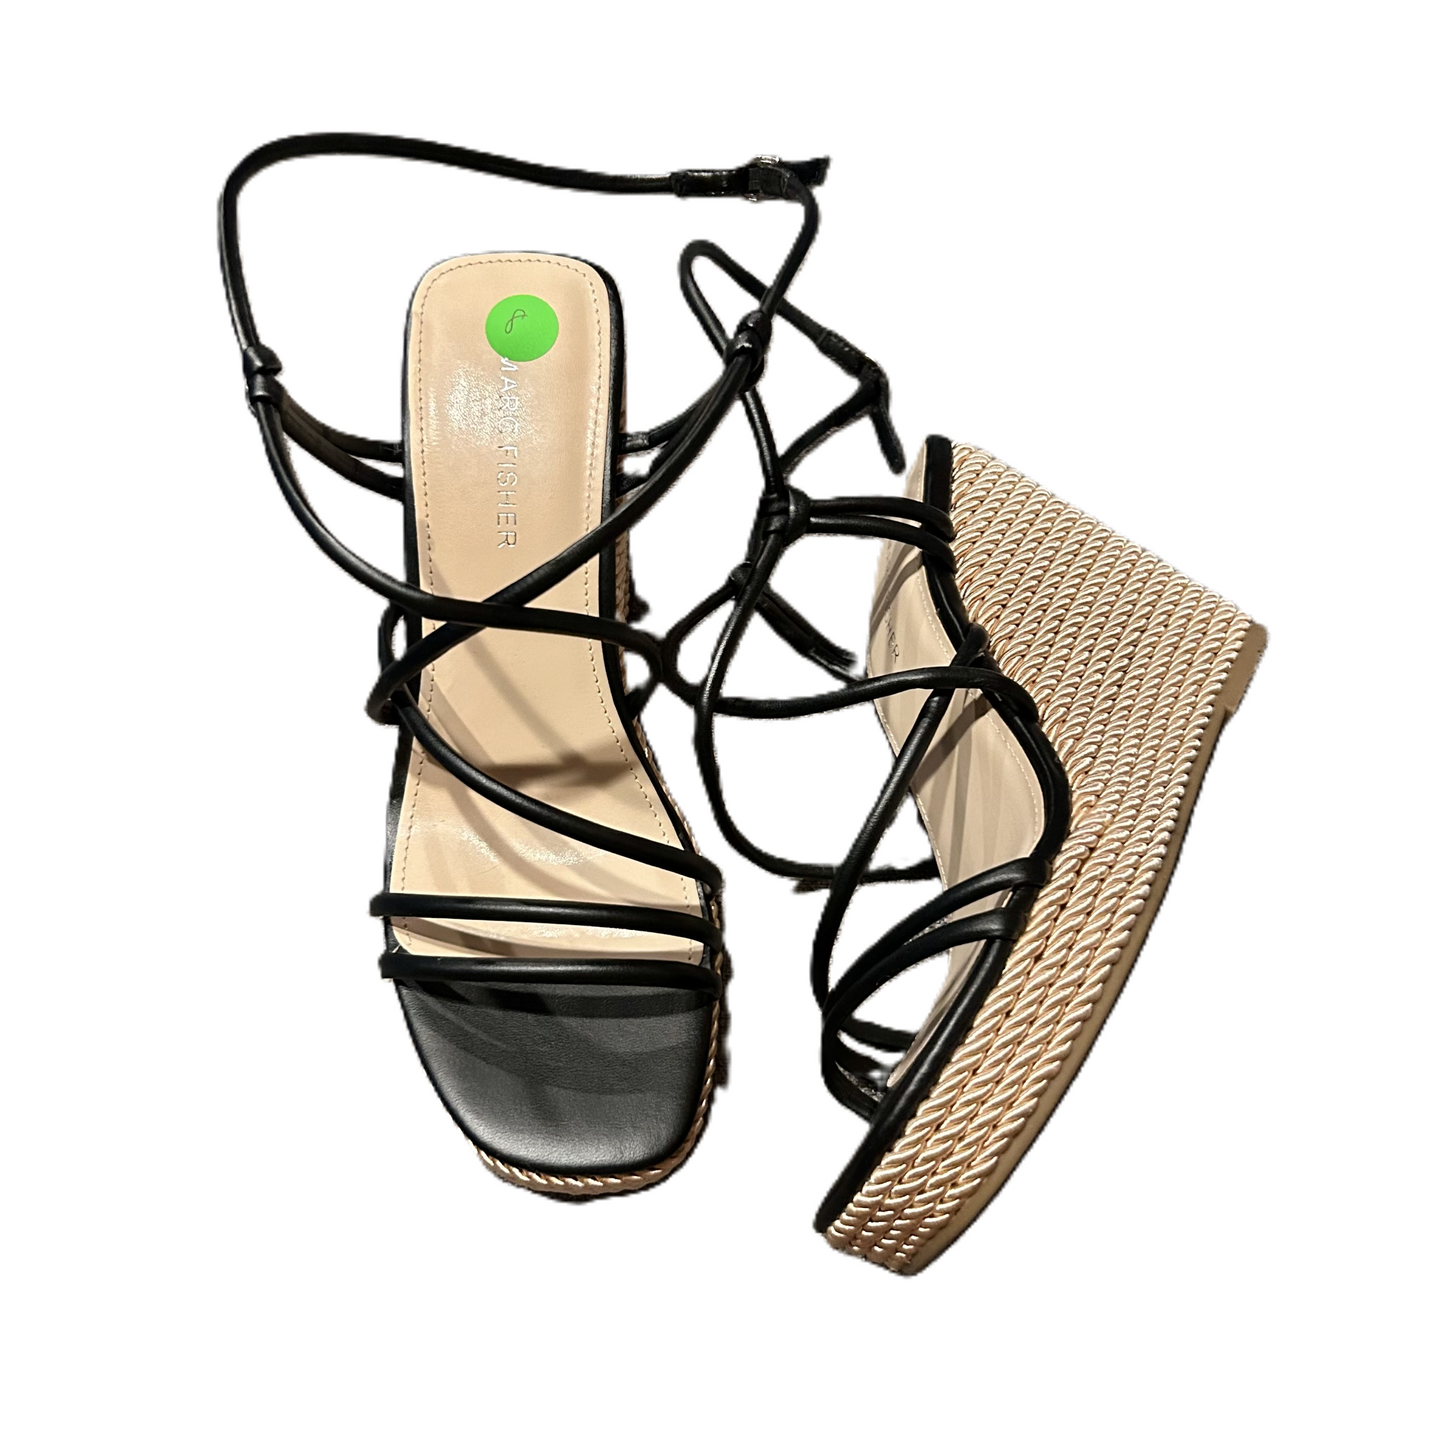 Black Sandals Heels Platform By Marc Fisher, Size: 8